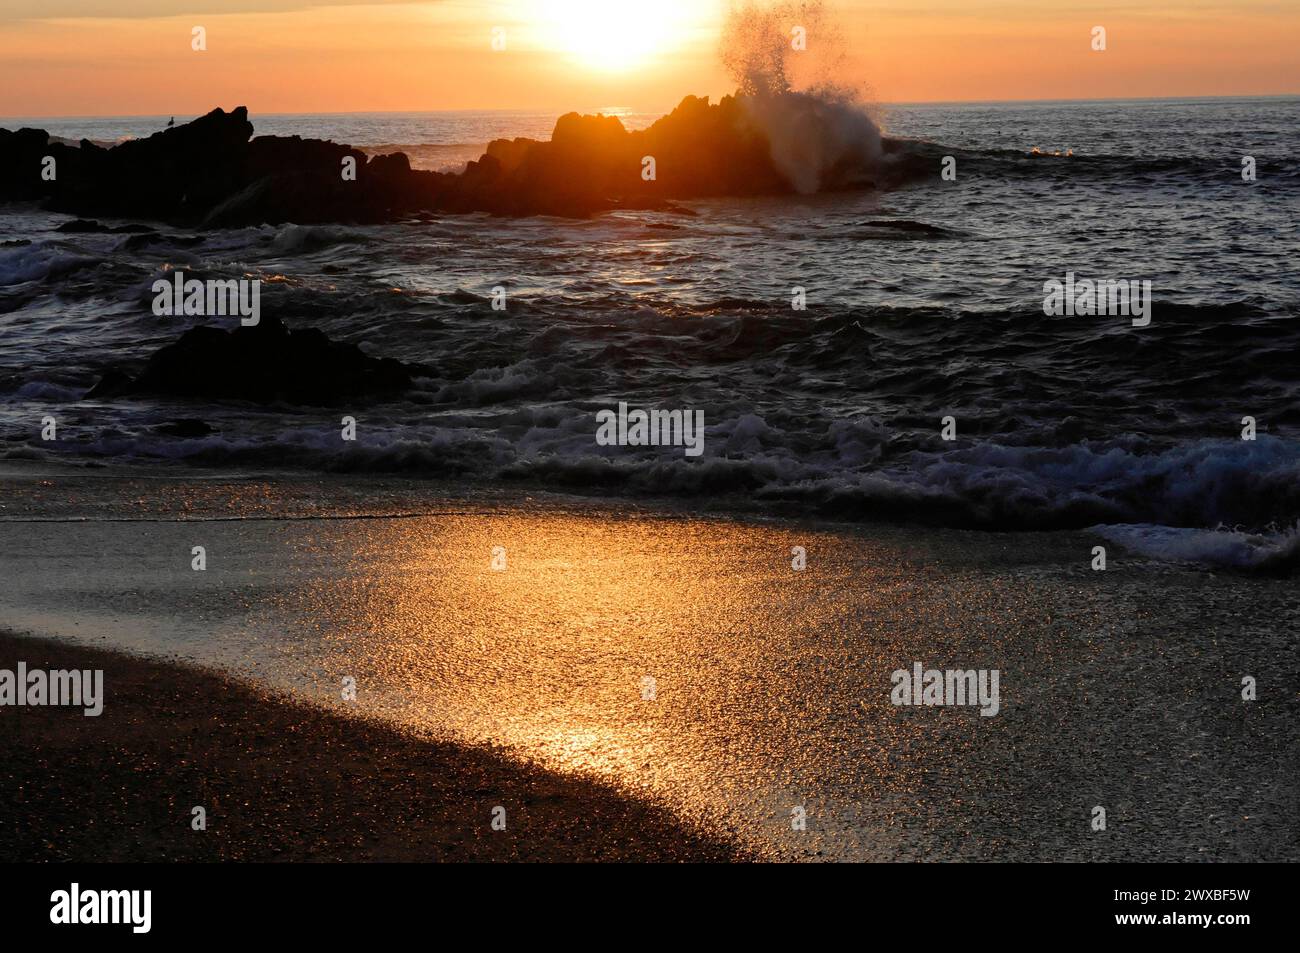 Wellen, die bei Sonnenuntergang gegen Felsen im Meer prallen und ein dynamisches und kraftvolles Bild schaffen, in der Nähe von Mindelo, Porto, Nordportugal, Portugal Stockfoto